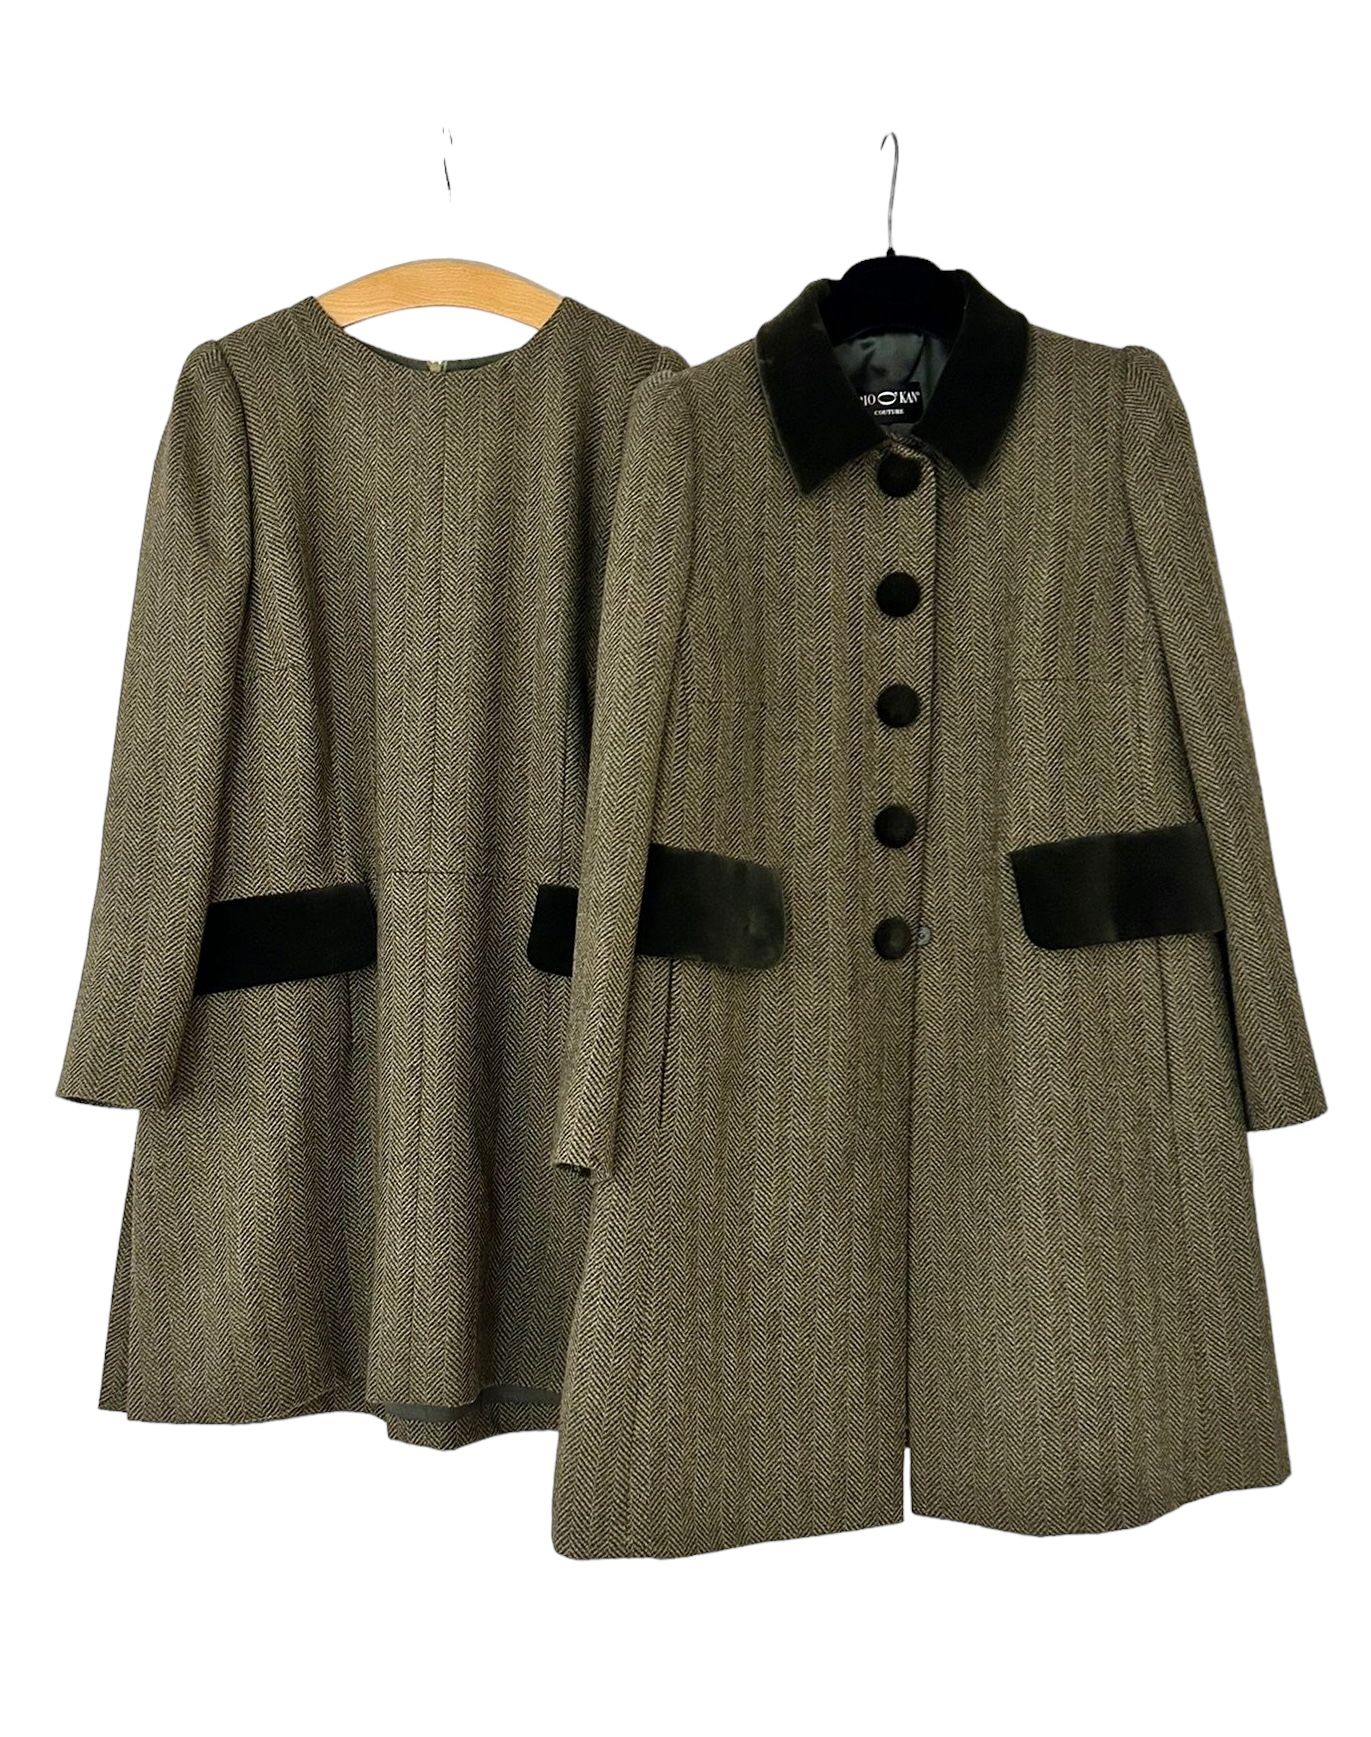 PIO O' KAN Complet, manteau et robe courte
En tweet de laine de teinte vert et v&hellip;